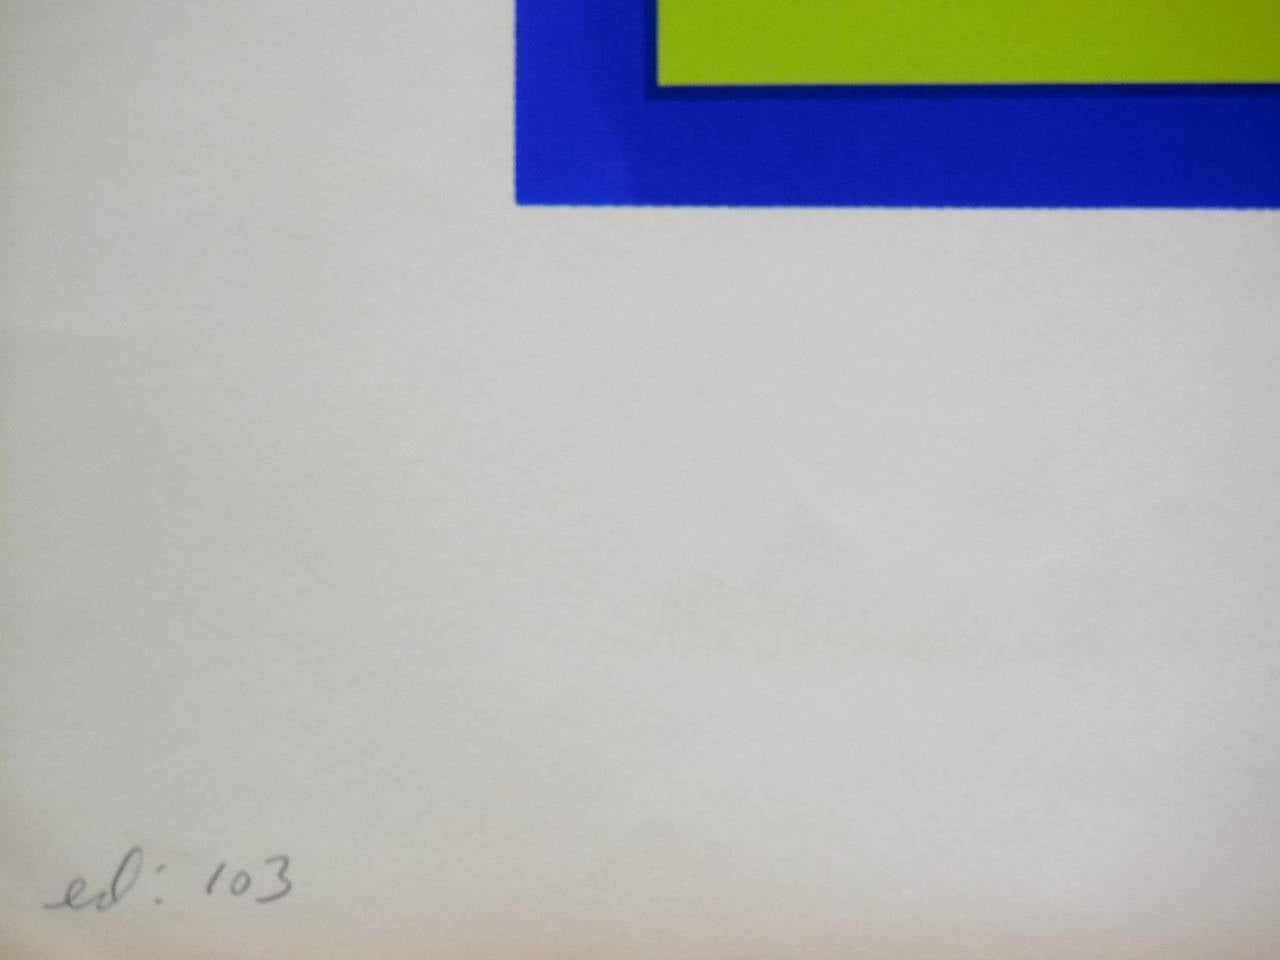 Dies ist für ein Foto Siebdruck Serigraphie ist es betitelt Andy Warhol: Pop Artist American. leichte Knitterung auf Papier außerhalb des Bildes

John Brower arbeitete 12 Jahre lang in Chicago als Plakatgestalter. Er lehrte Kunst am Alverno College